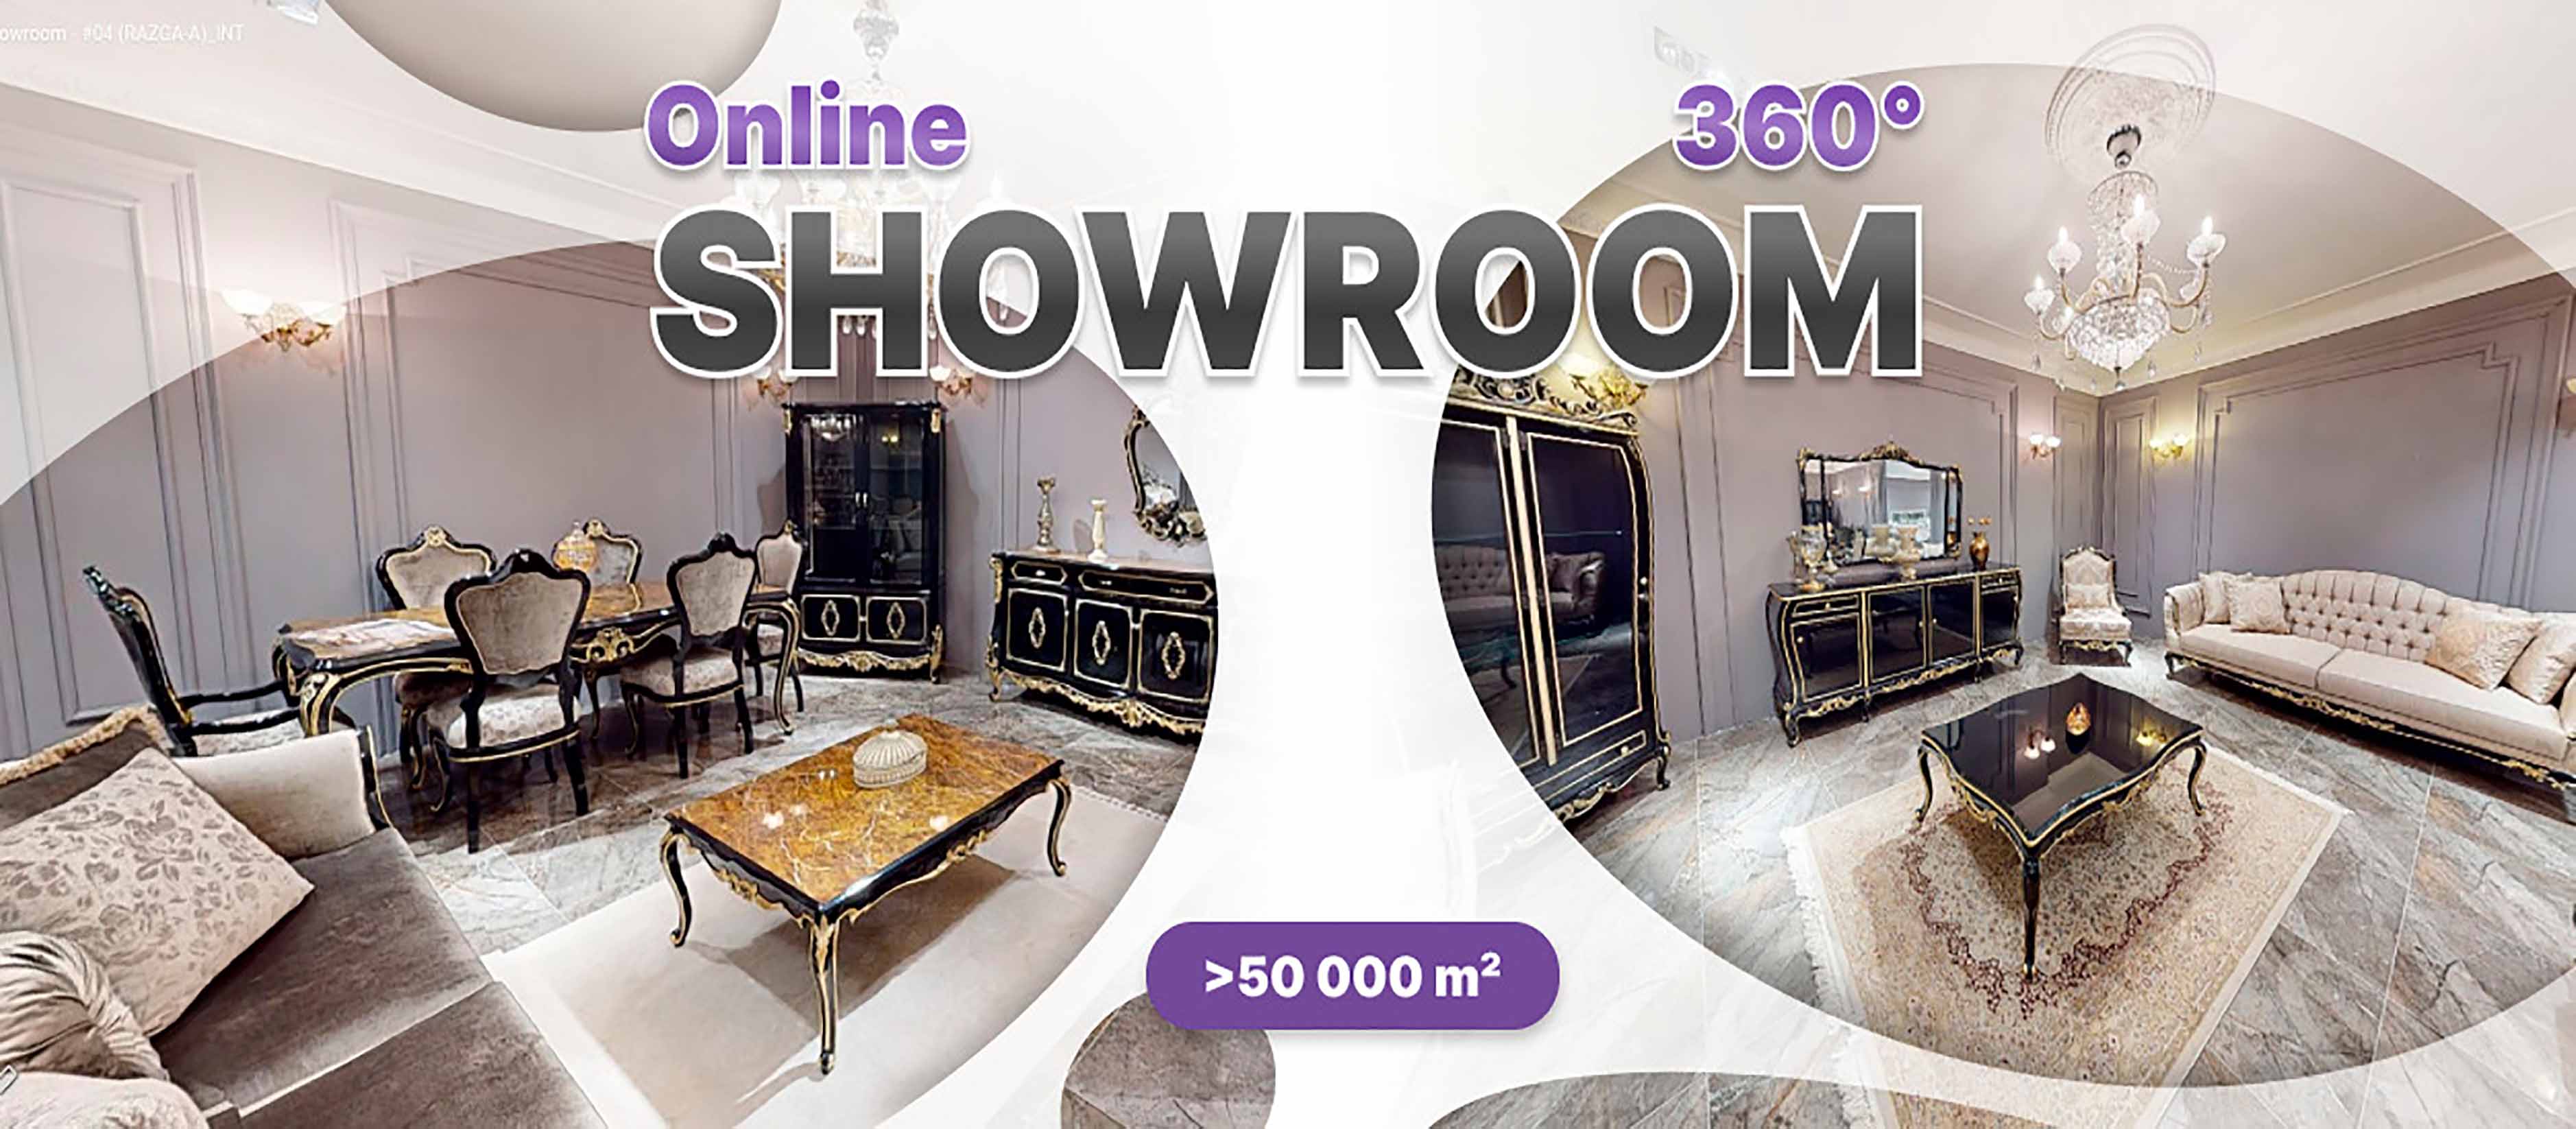 Online Showroom Moebelhaus 